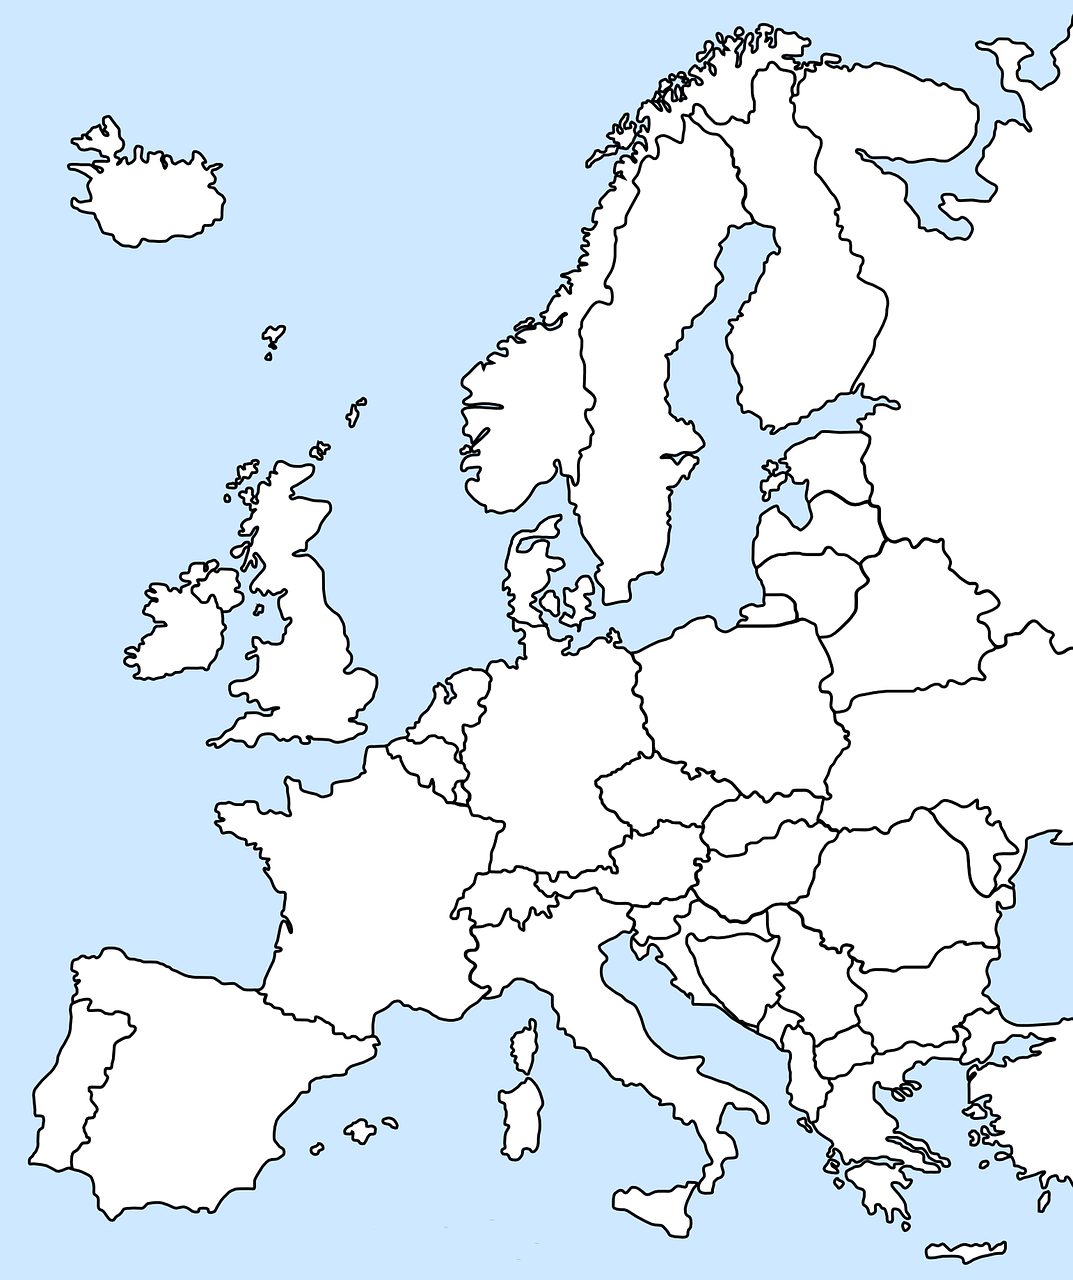 Europa de. Контурная карта стран Европы без названий. Карта Европы белая. Карта - Европа. Карта Европы со странами белая.